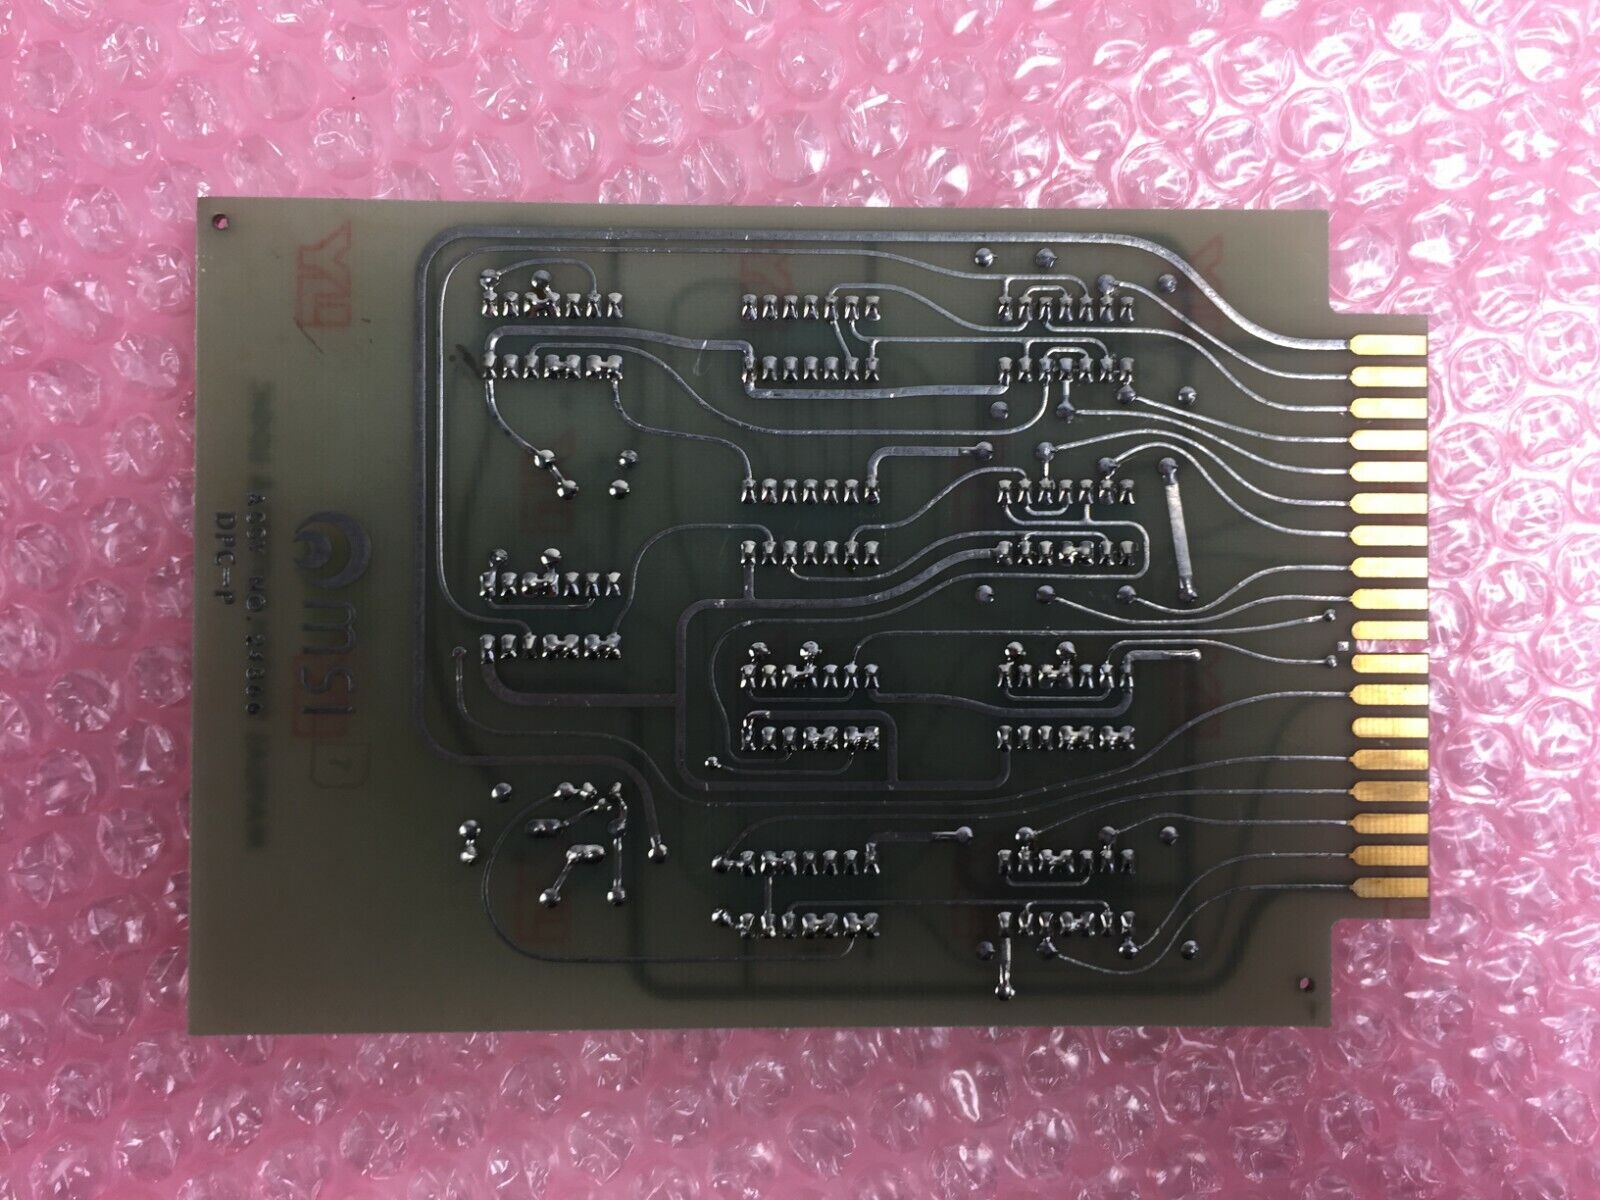 MSI Manual Switch Buffers & Logic 11048 Assy No 24866 DPC-P Card